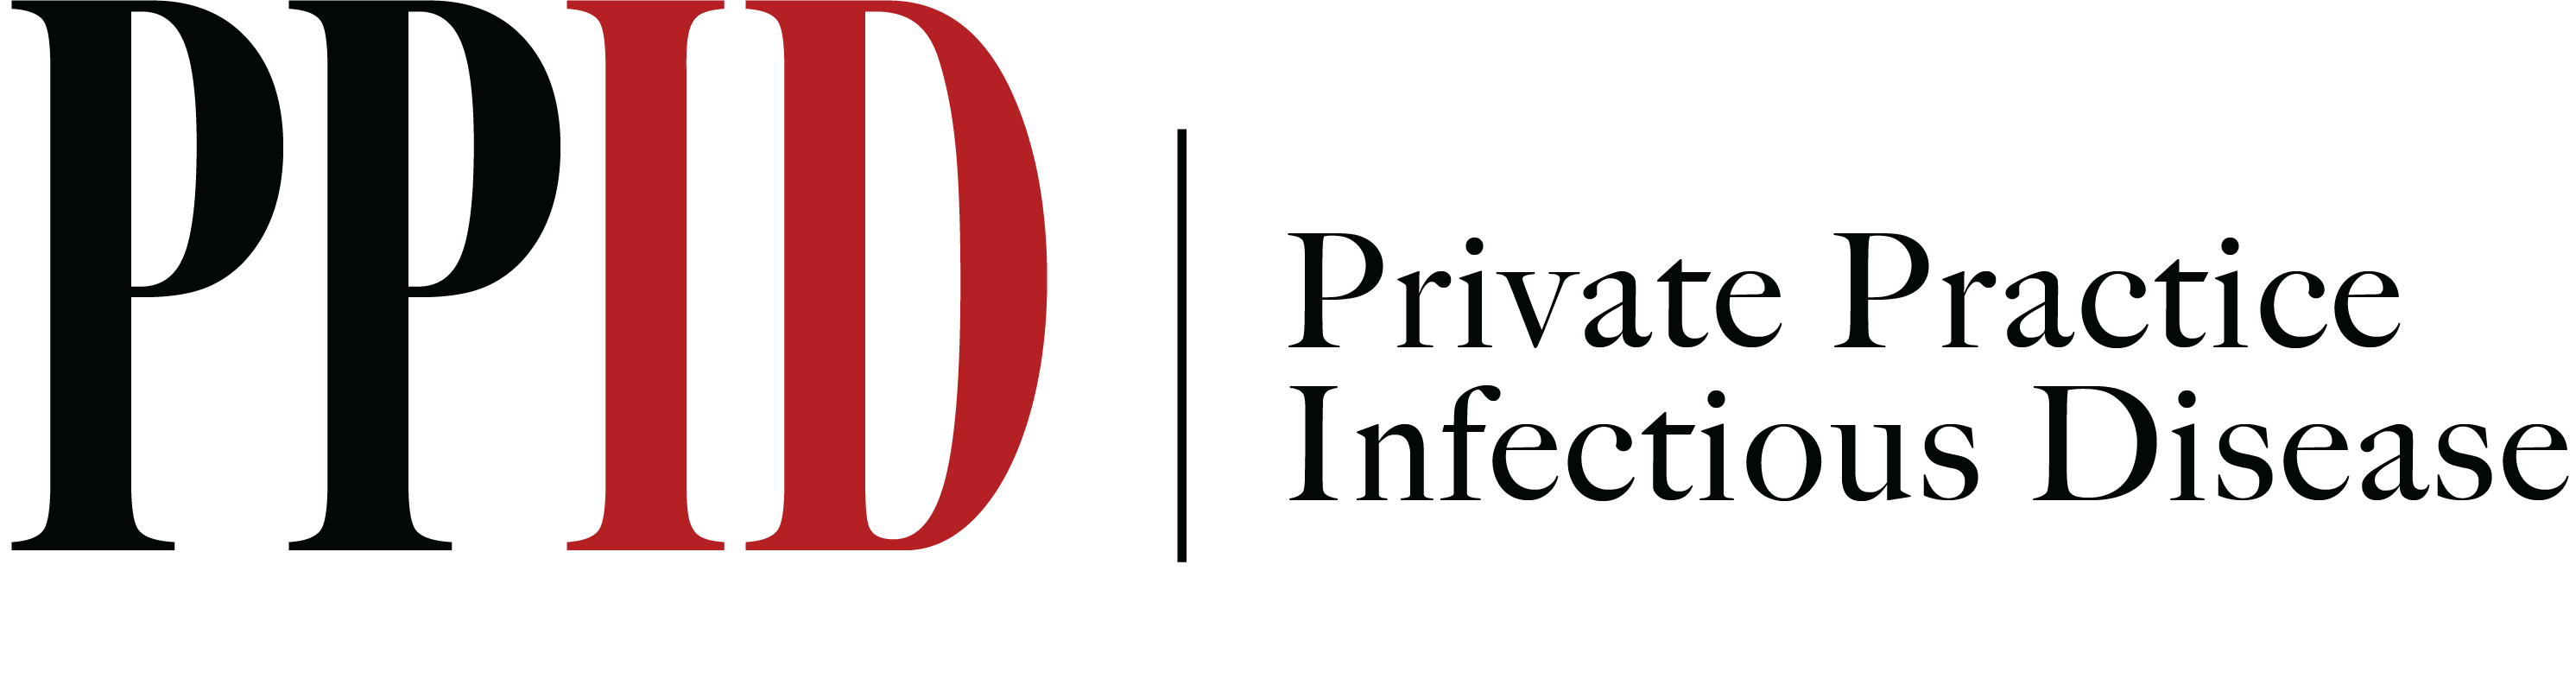 PPID Logo - Header